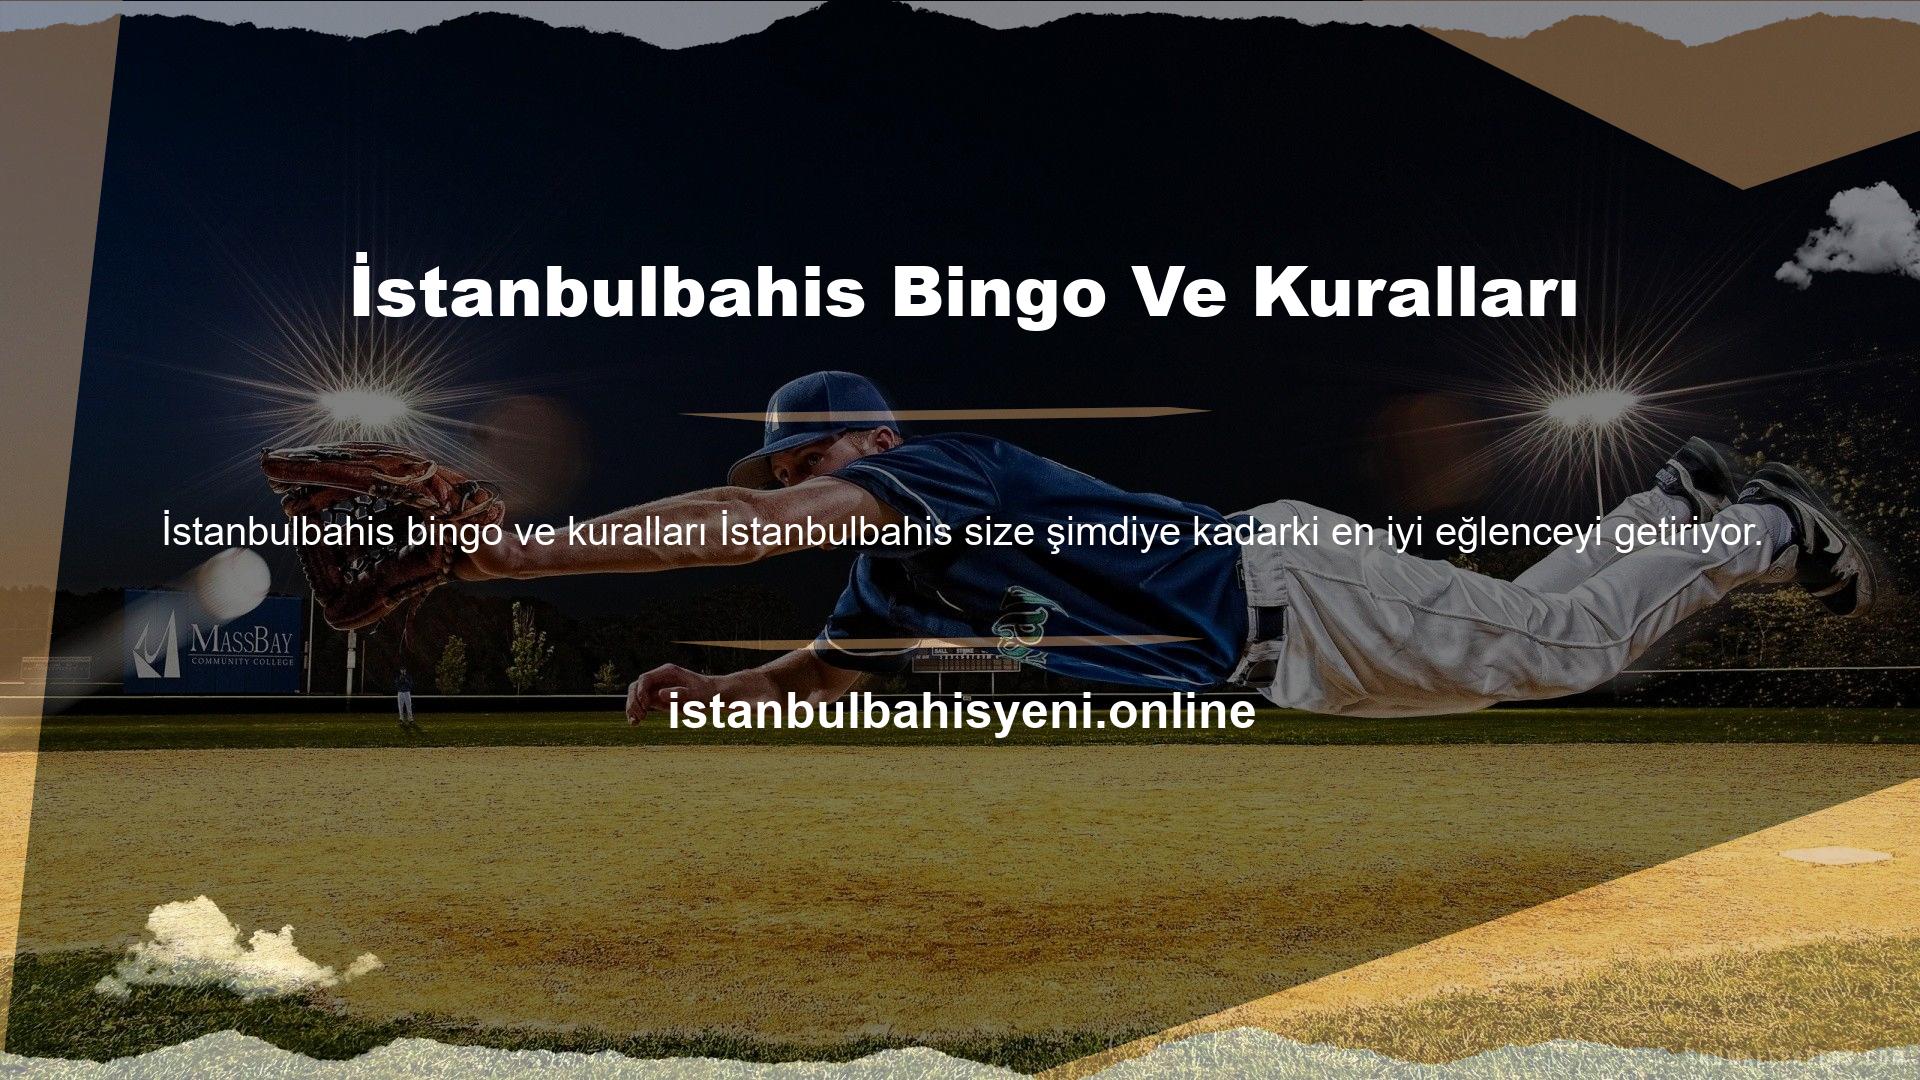 İstanbulbahis Bingo, özellikle sağladığı gerçek heyecan nedeniyle birçok kişi tarafından seçildi